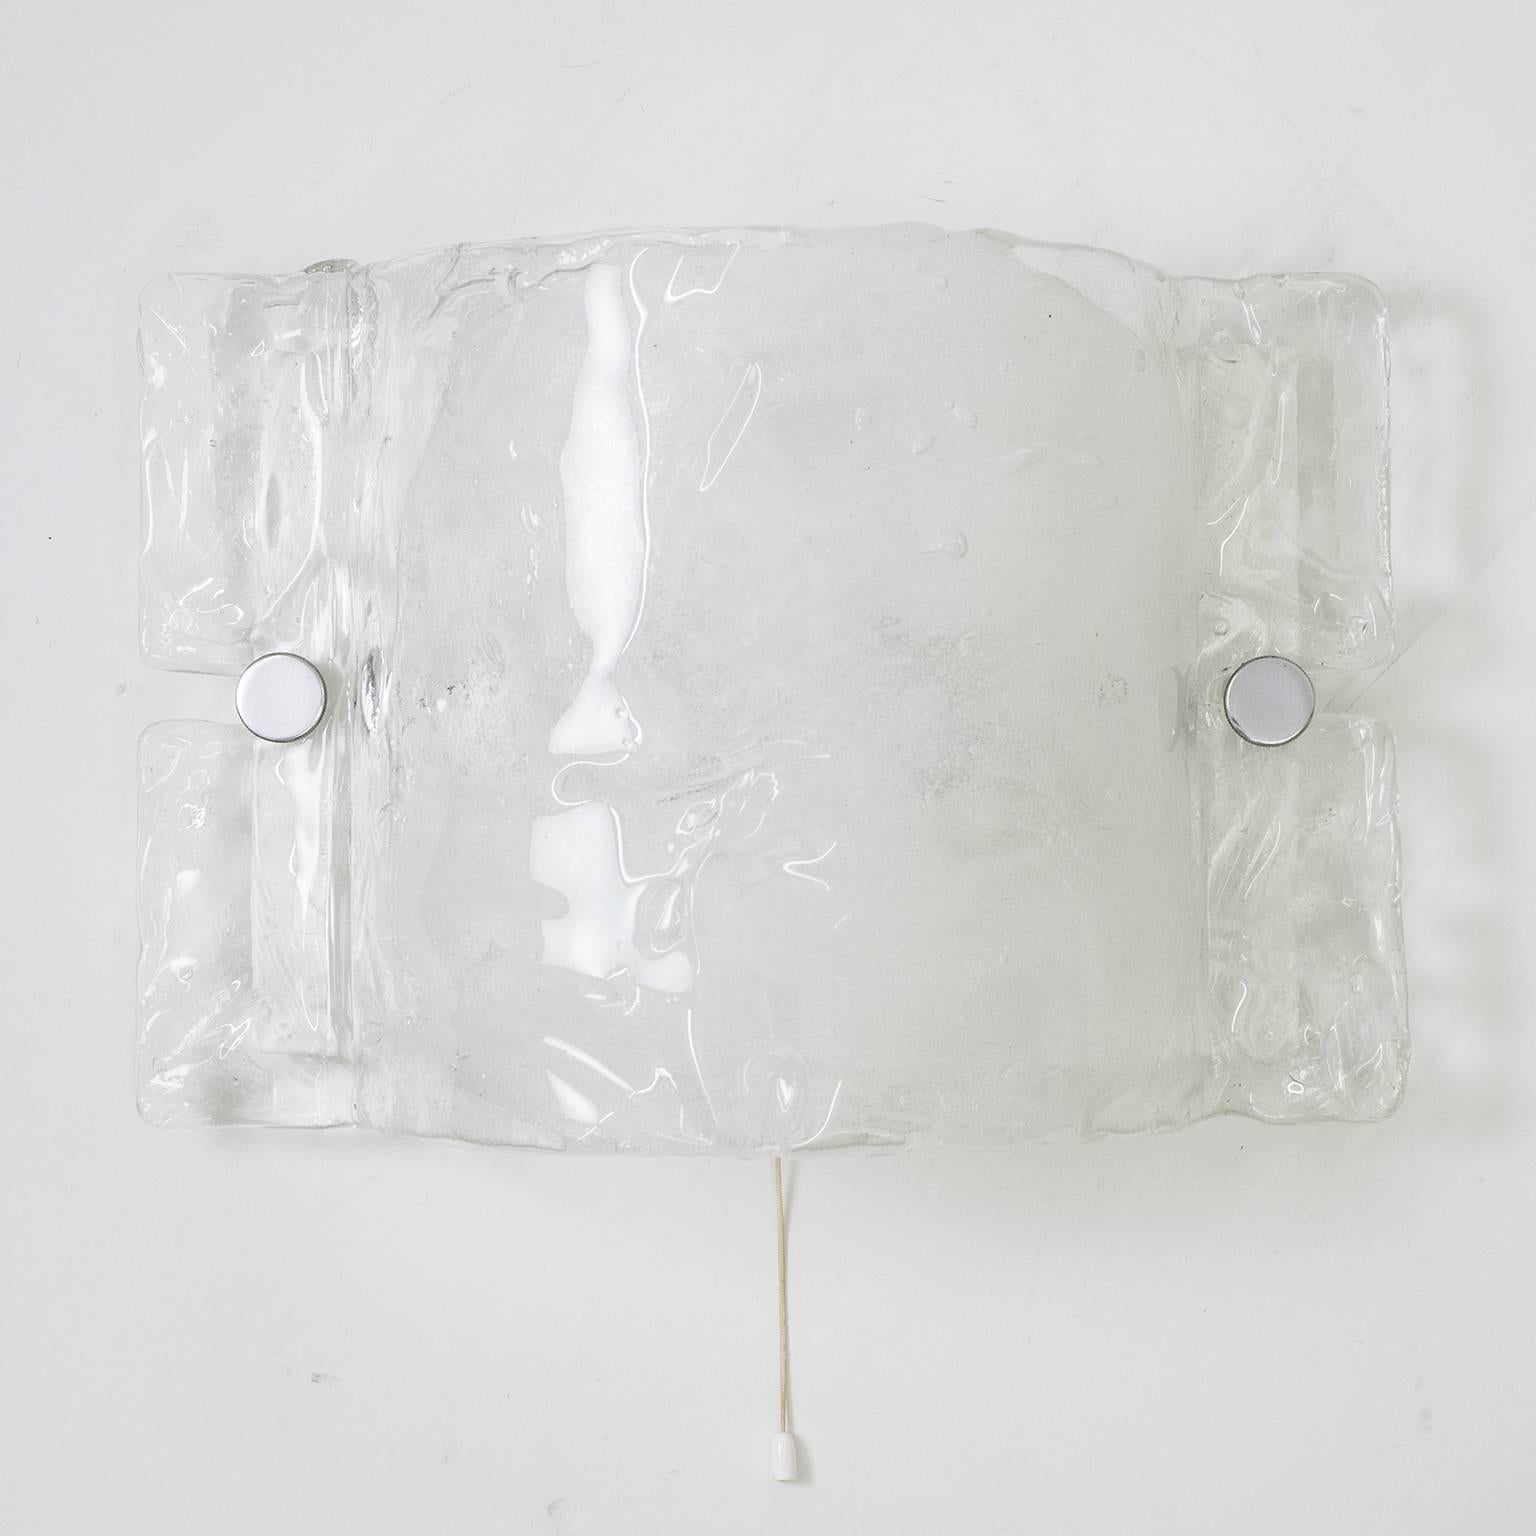 Sehr ätherische 1970er Kalmar Wandleuchte. Sie hat eine weiß lackierte Rückwand und einen großen, stark strukturierten und gewölbten Diffusor aus transparentem Glas mit großen Pinselstrichen aus winzigen Bläschen in der Mitte, die die beiden